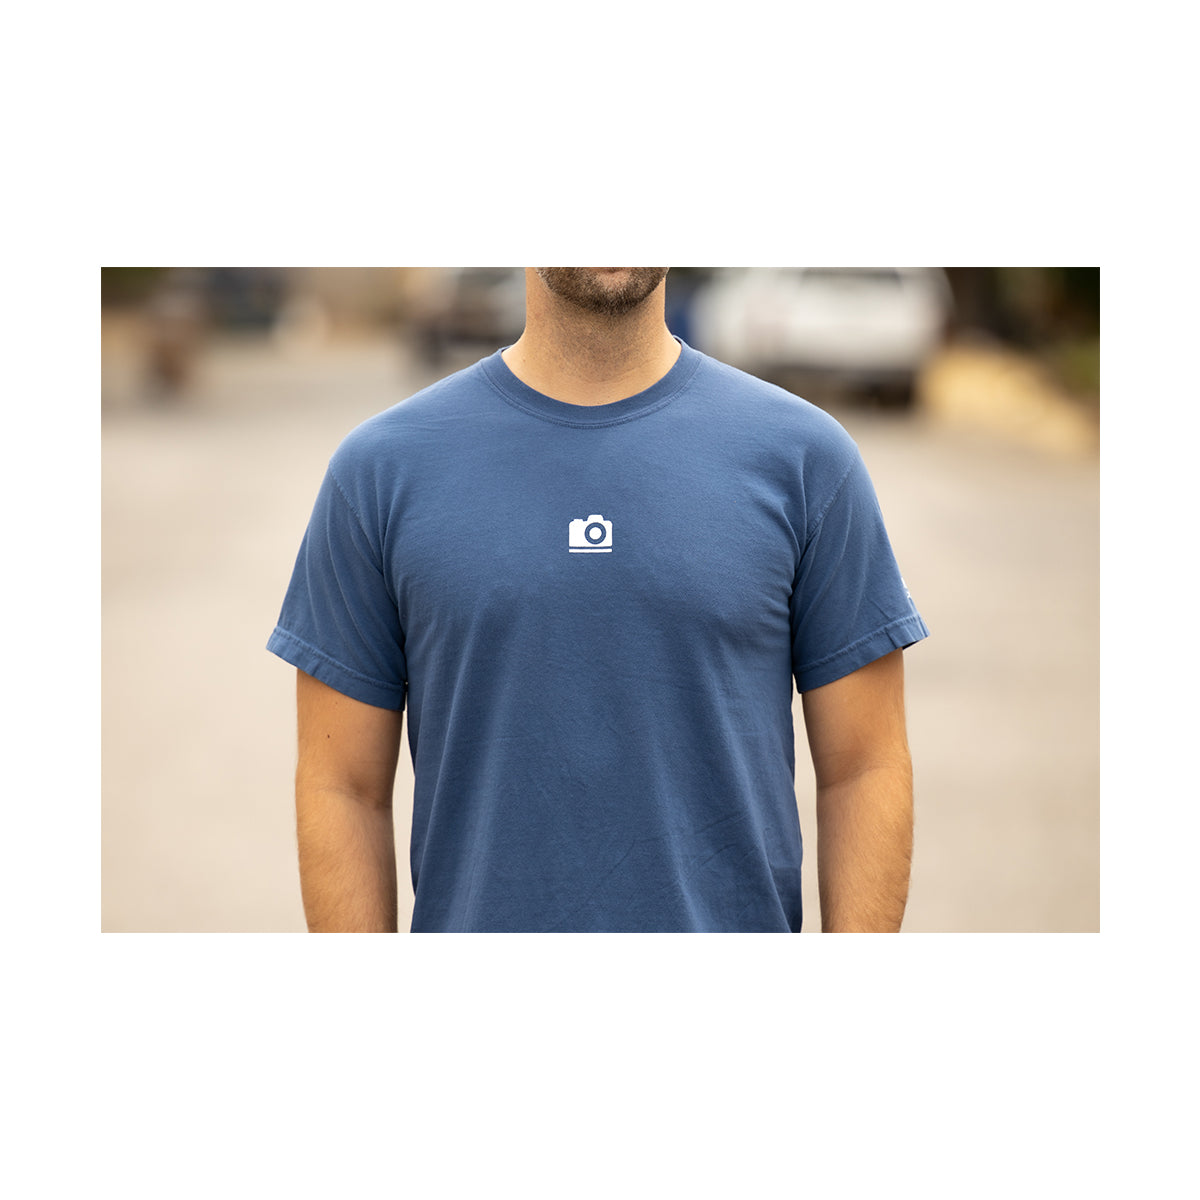 pictureline Apparel: Spring 2020 Short Sleeve Shirt Large (Blue)